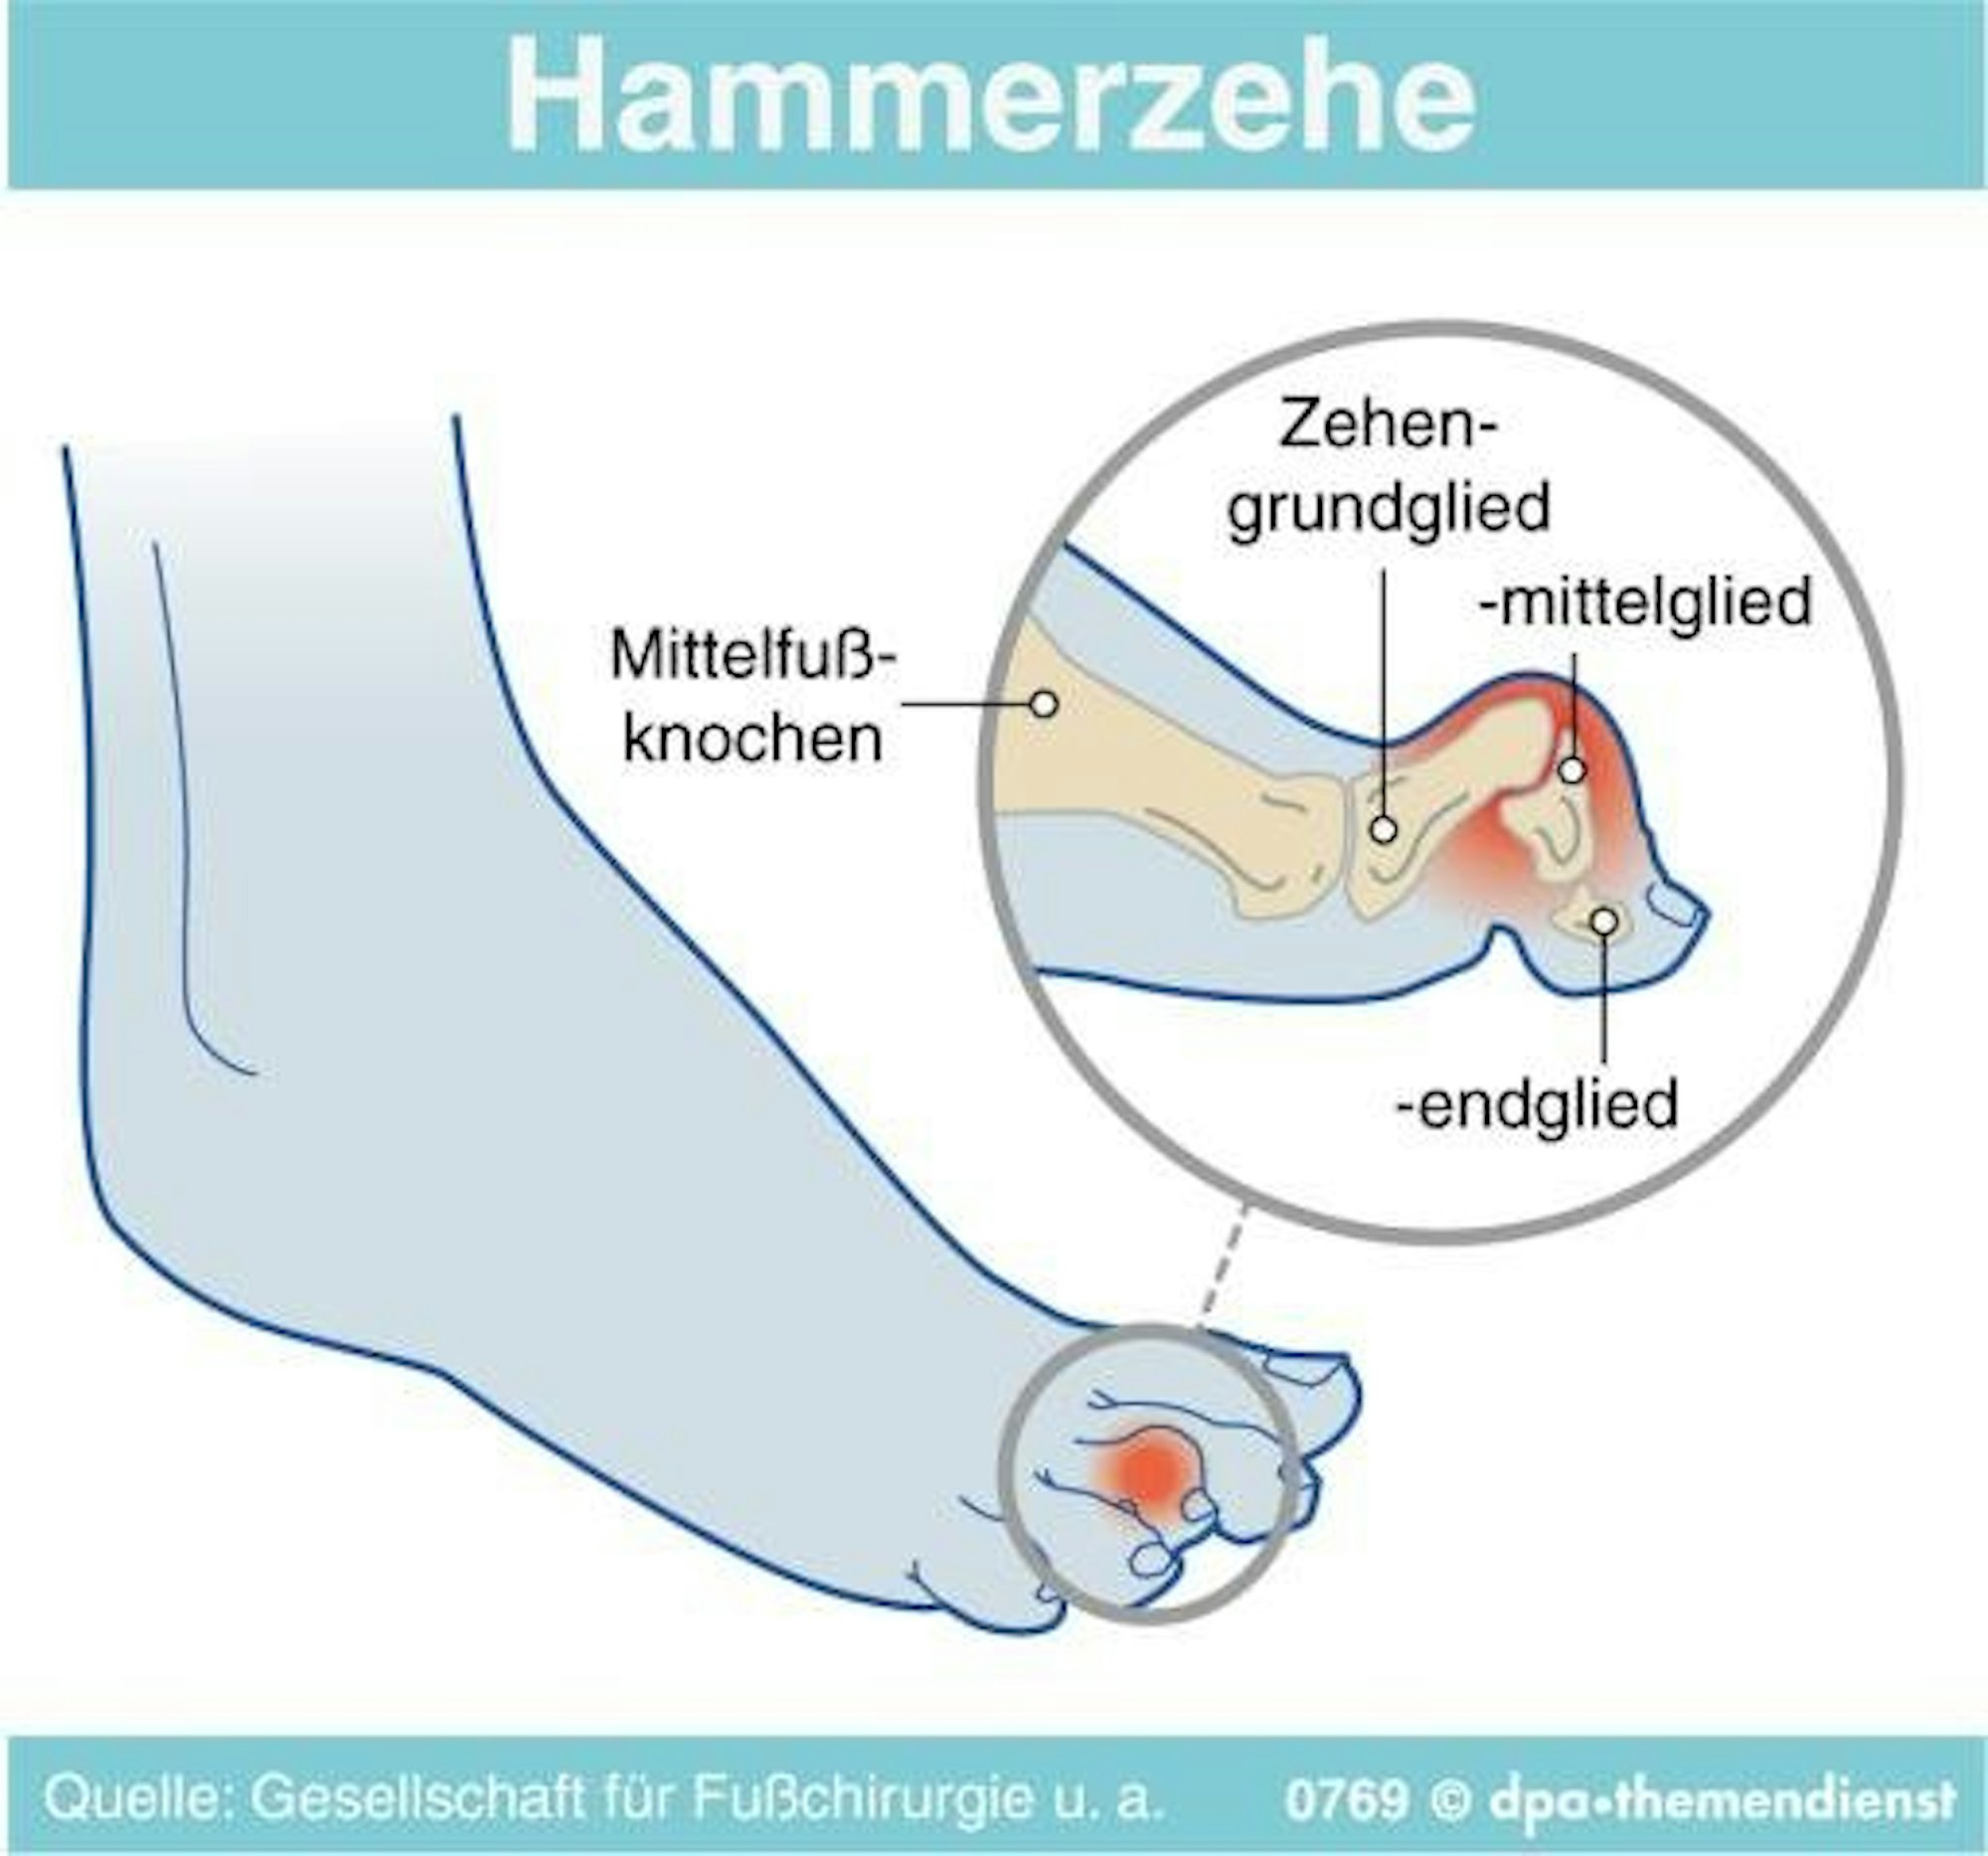 Hammerzehen2